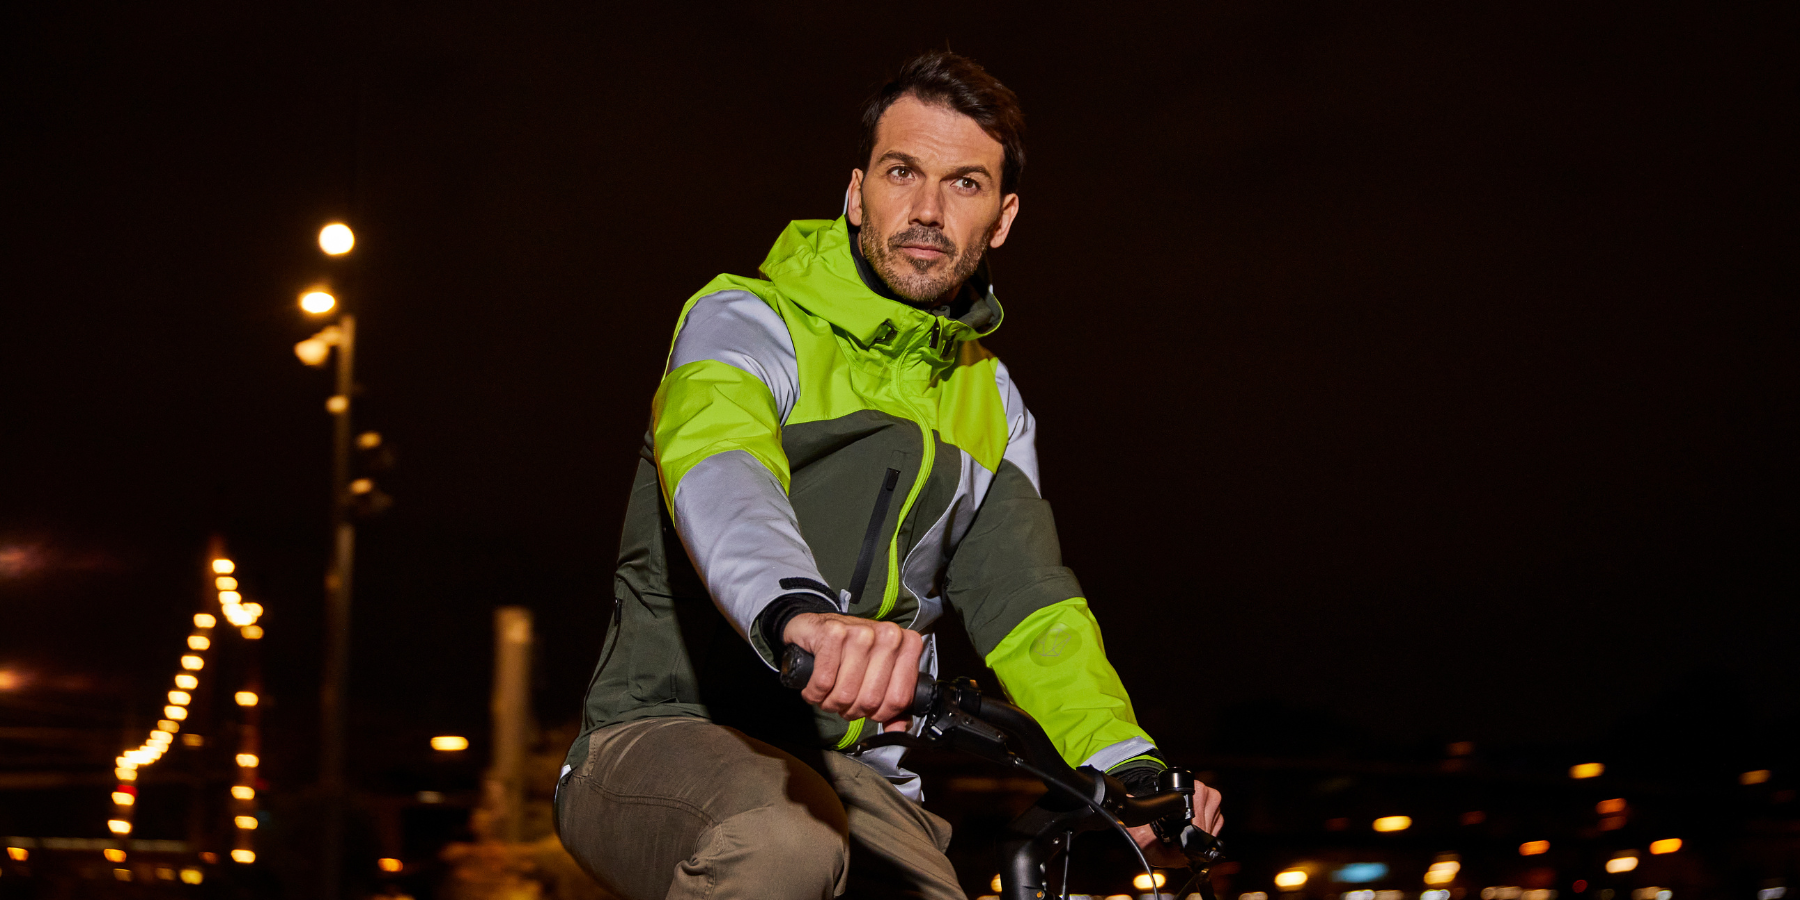 veste vélo homme fluo et réfléchissante pour rouler la nuit